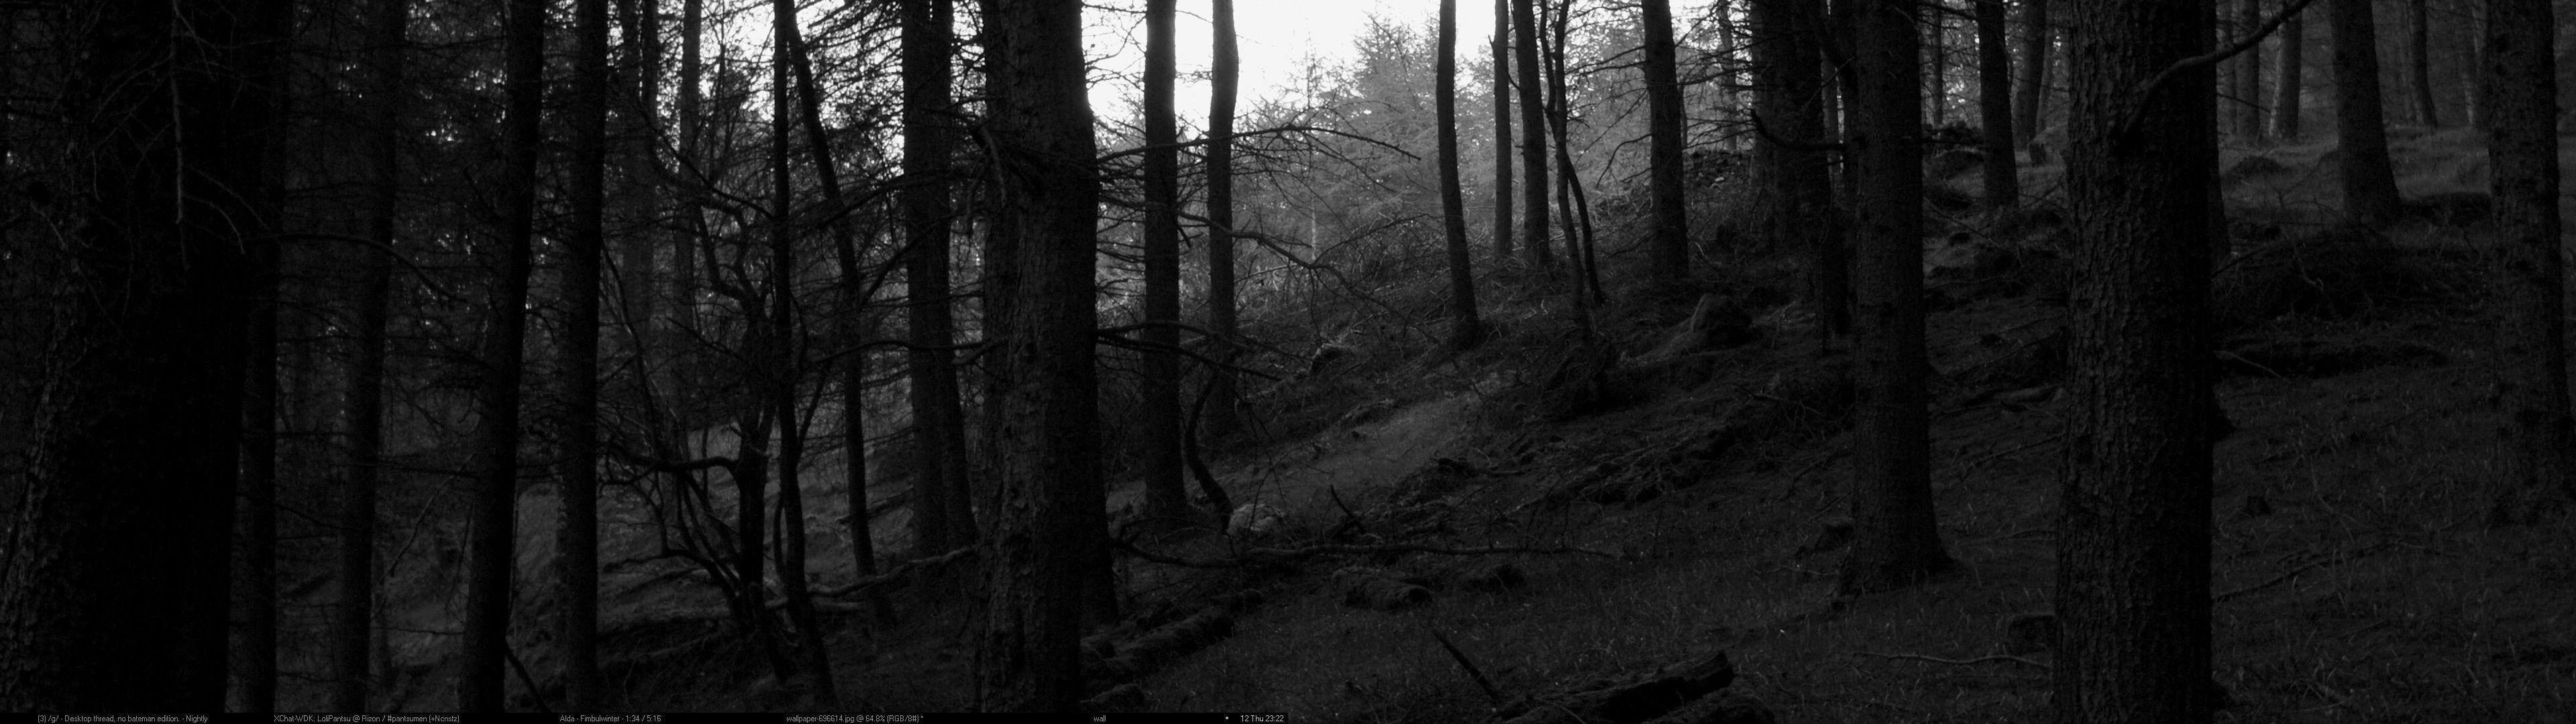 Hình ảnh Black Forest mang đến cho bạn cảm giác bí ẩn và lạ lẫm. Những hình nền này đưa bạn vào thế giới của những bức ảnh tuyệt đẹp và những câu chuyện đen tối trong rừng đen. Hãy để cho những hình nền này giúp bạn thoát khỏi thế giới hiện tại và thưởng thức những khoảnh khắc thật tuyệt vời.